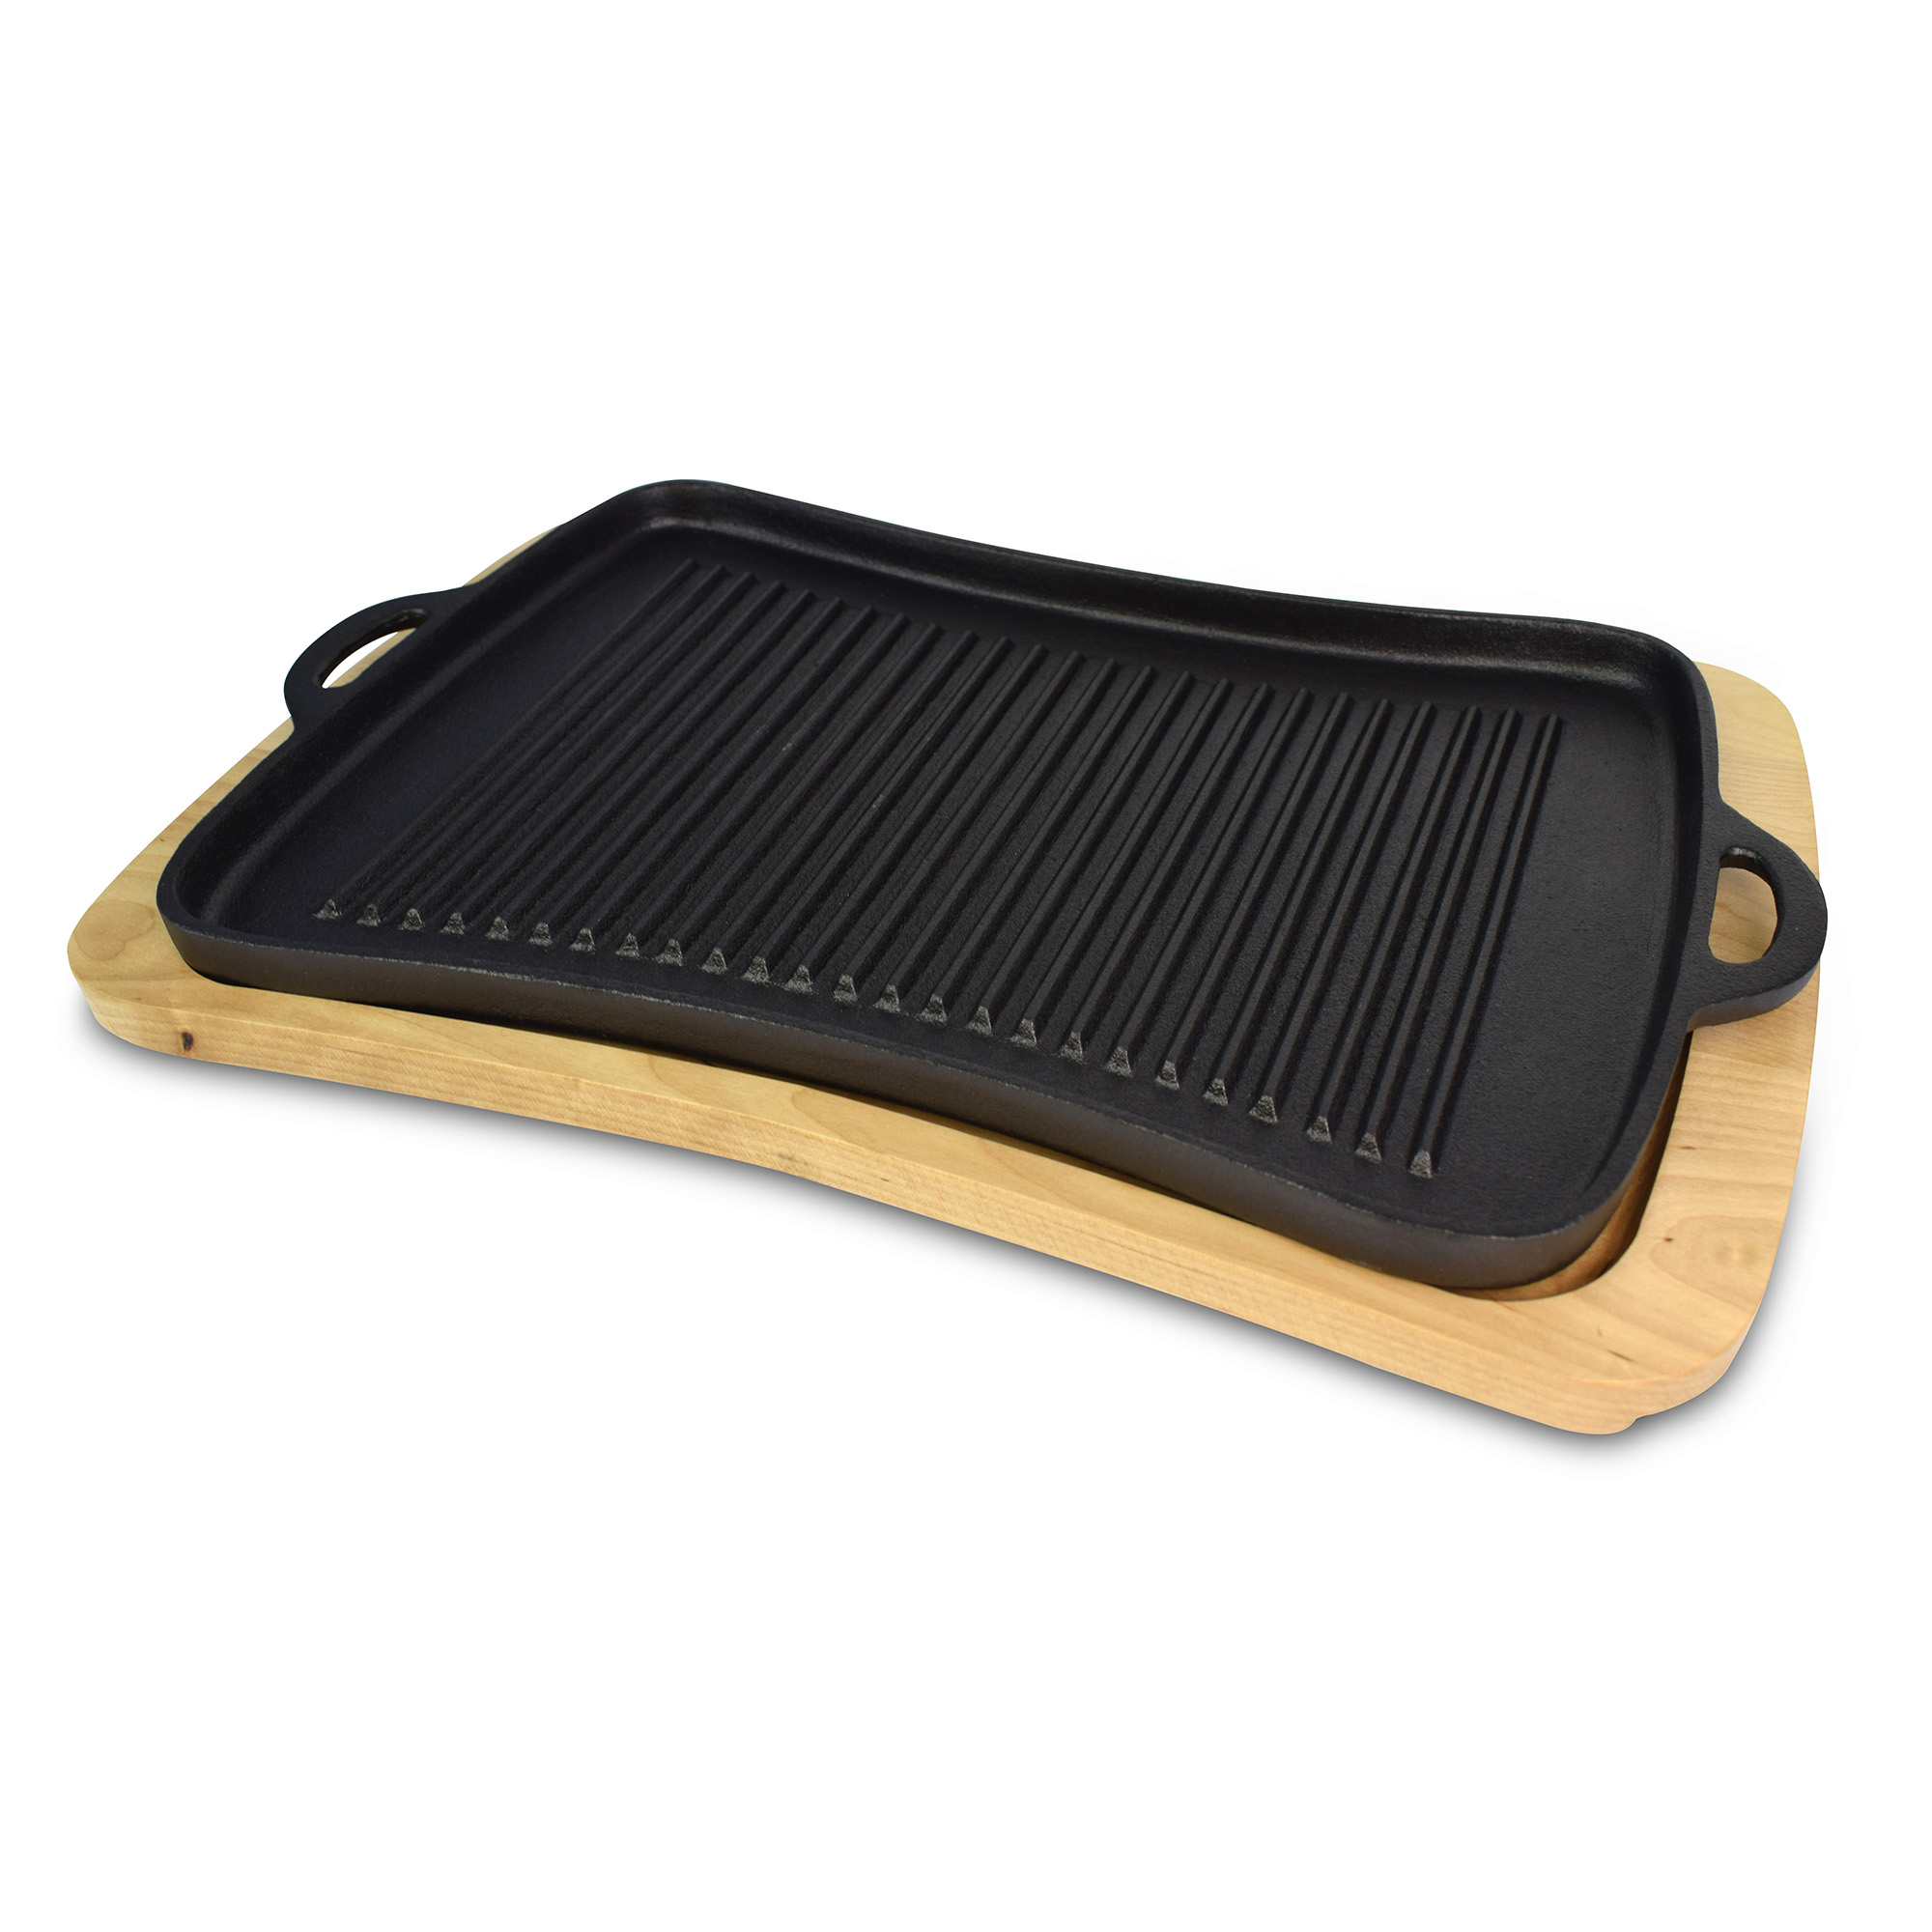 Jim Beam Grillplatte aus Gusseisen mit Holzuntersetzer, gerillter Oberfläche, lange Wärmespeicherung, BBQ Braten und Garen, JB0206